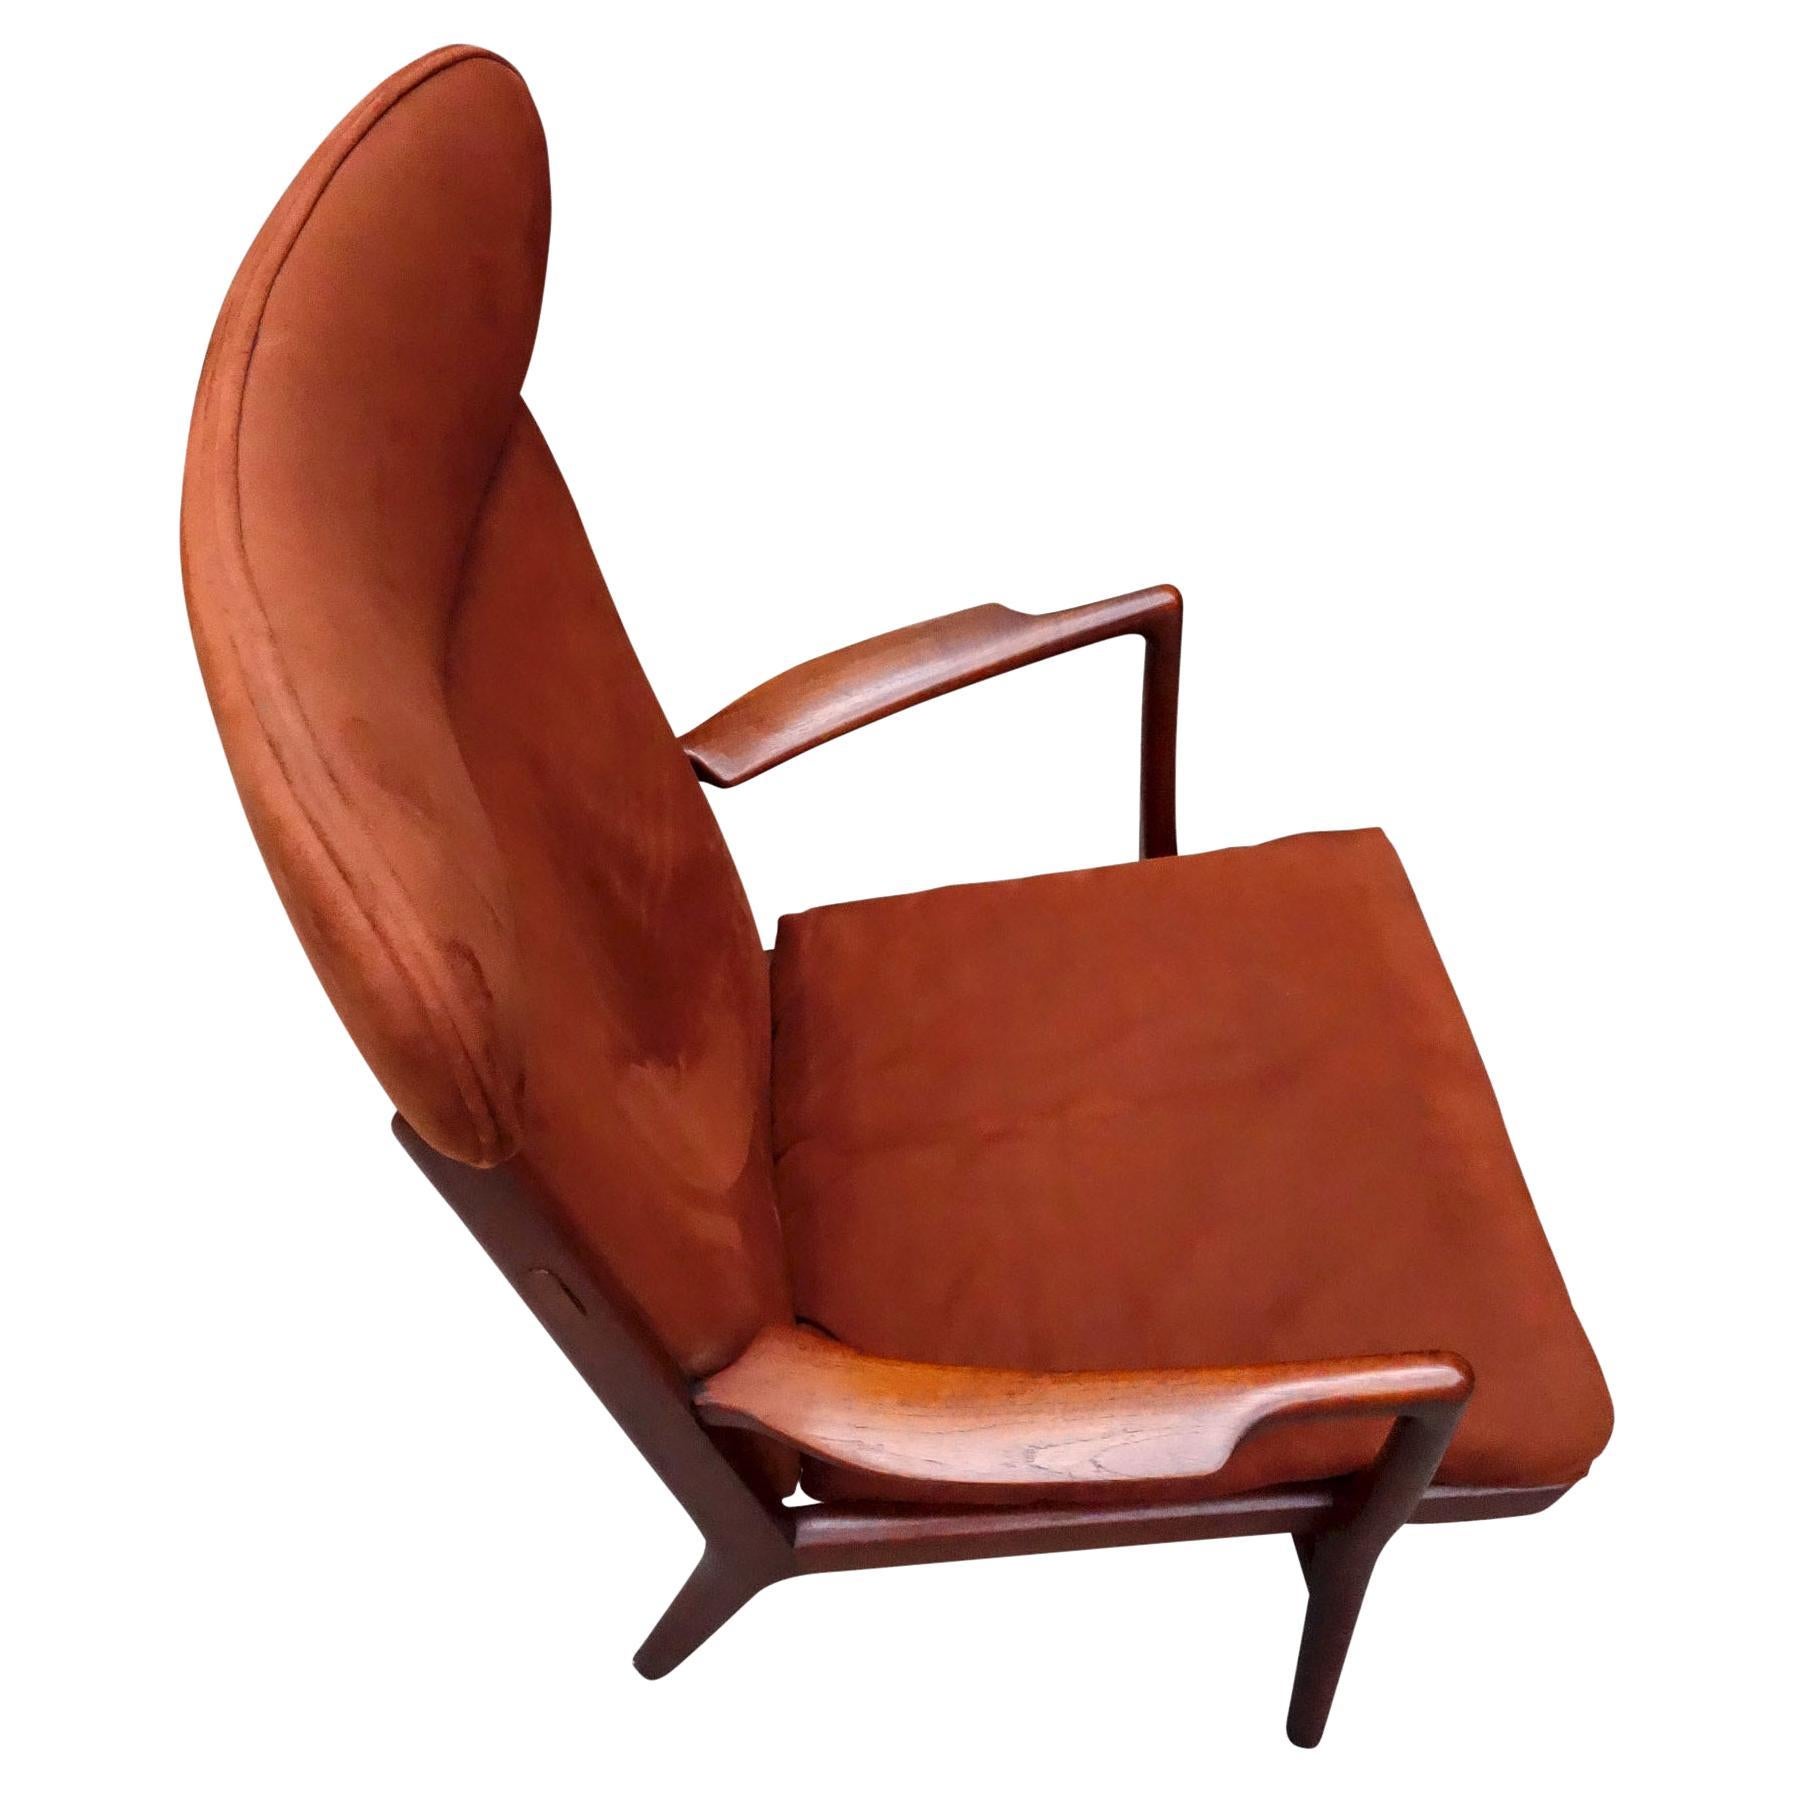 Zu Ihrer Bedingung ist dieser erstaunlich bequeme Lounge-Sessel von Hans Wegner. Modell AP-15 (A.P Stolen), eingeführt von George Tanier. Dieses seltene Stuhlmodell besteht aus Teakholz mit beeindruckender Originalpatina. Hervorragende